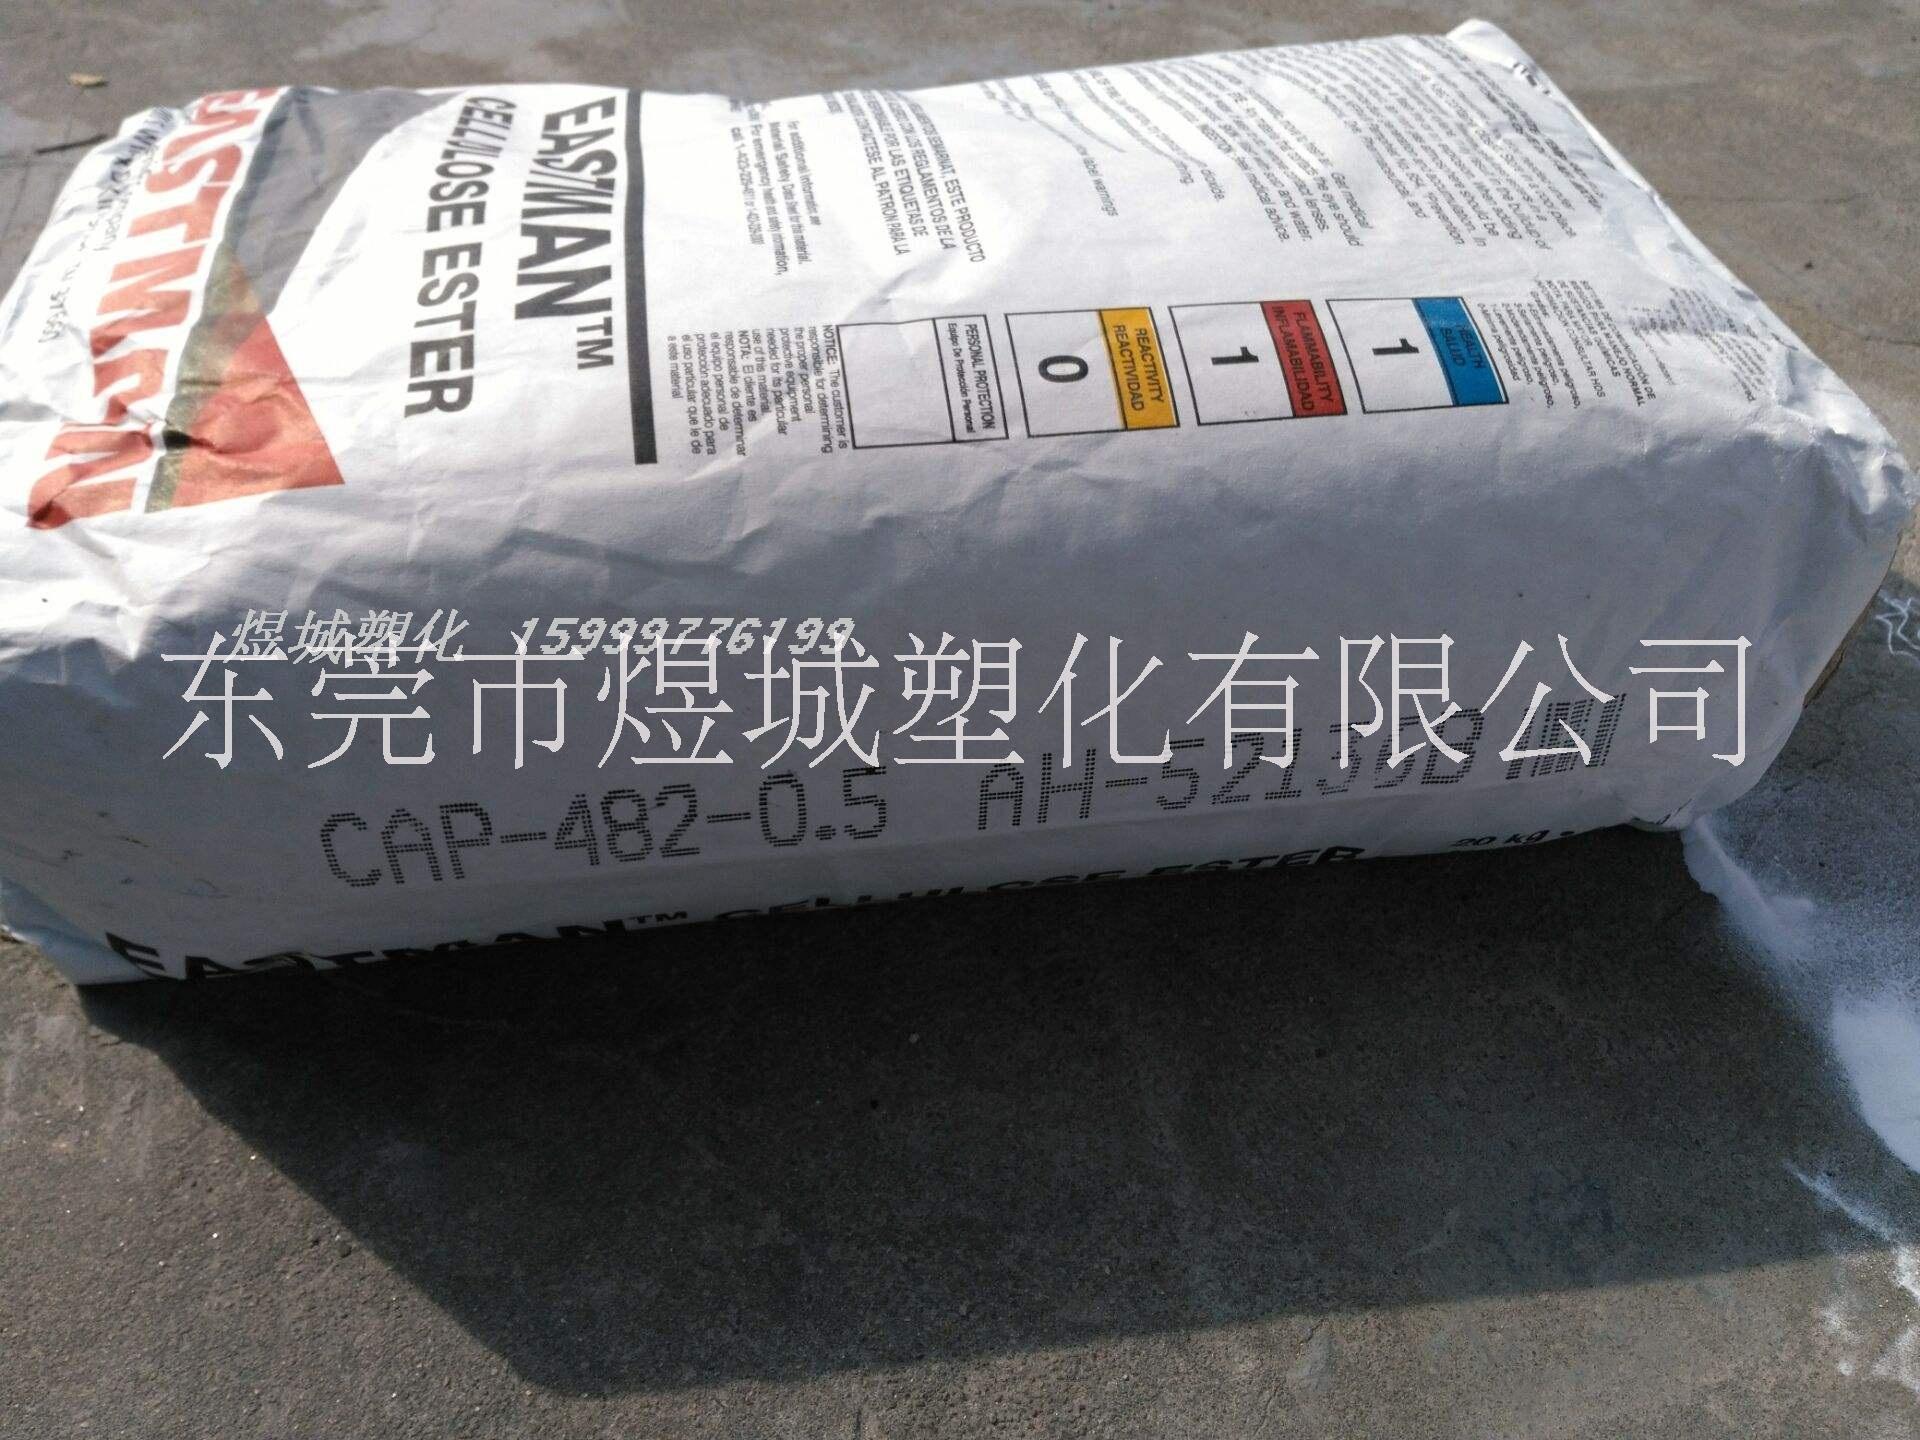 东莞市极低粘度金属涂料厂家极低粘度金属涂料 CAB-551-0.01 伊士曼 缩短干燥时间